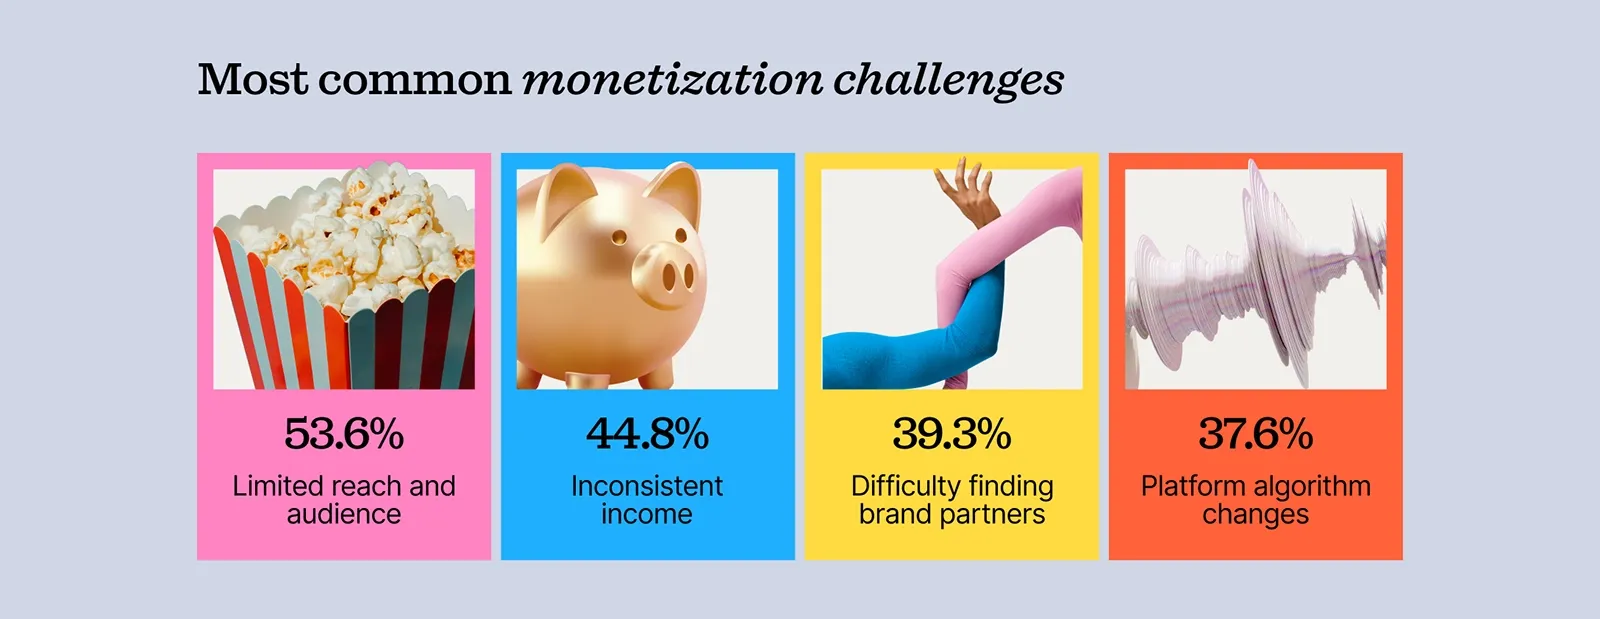 Monetization challenges